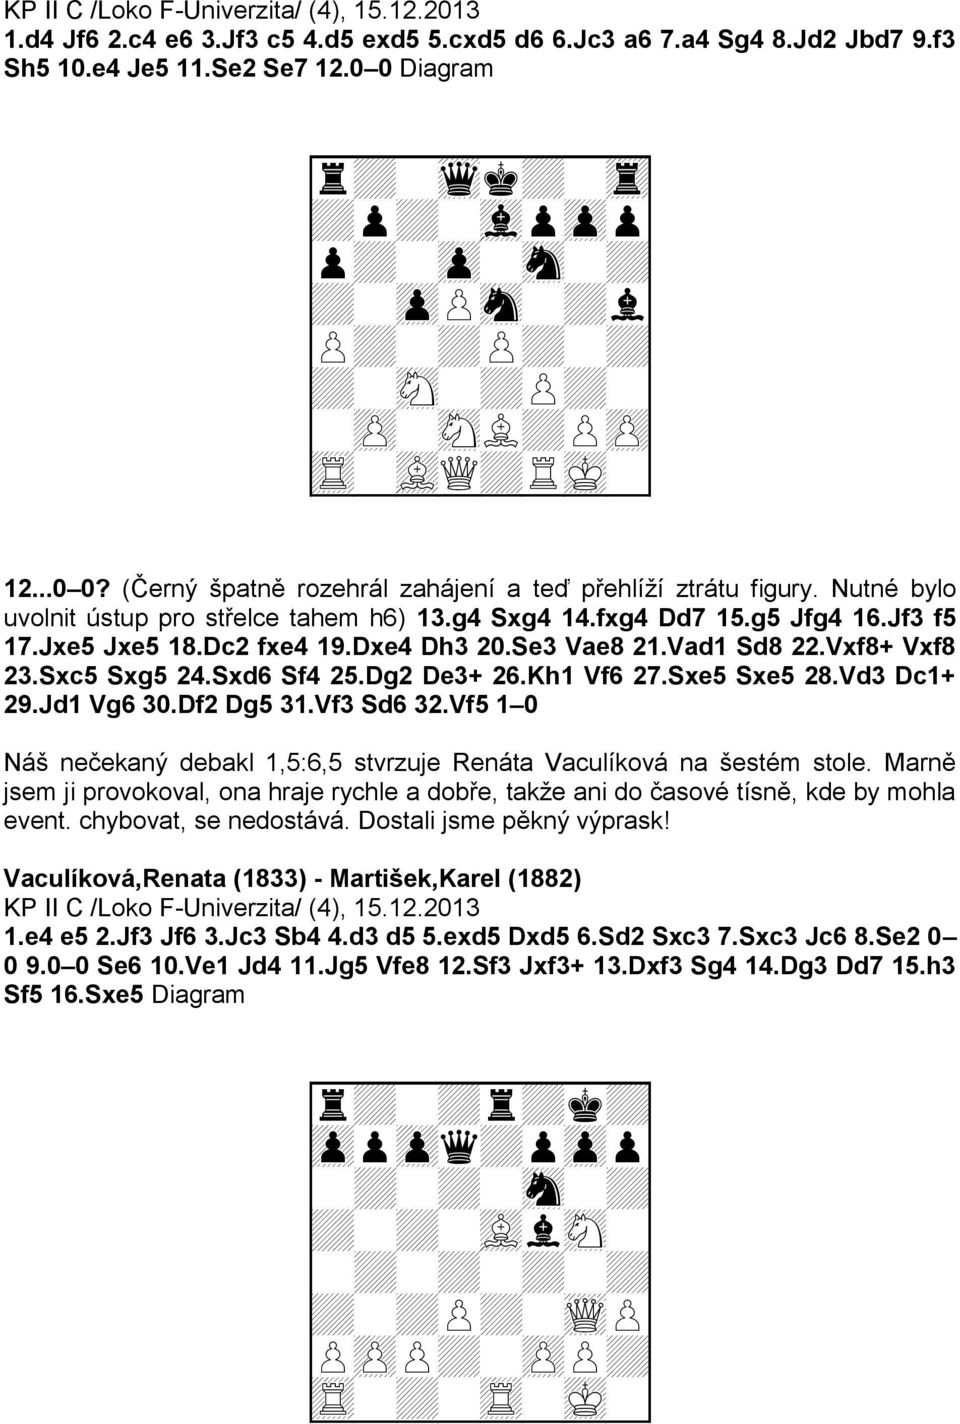 Nutné bylo uvolnit ústup pro střelce tahem h6) 13.g4 Sxg4 14.fxg4 Dd7 15.g5 Jfg4 16.Jf3 f5 17.Jxe5 Jxe5 18.Dc2 fxe4 19.Dxe4 Dh3 20.Se3 Vae8 21.Vad1 Sd8 22.Vxf8+ Vxf8 23.Sxc5 Sxg5 24.Sxd6 Sf4 25.